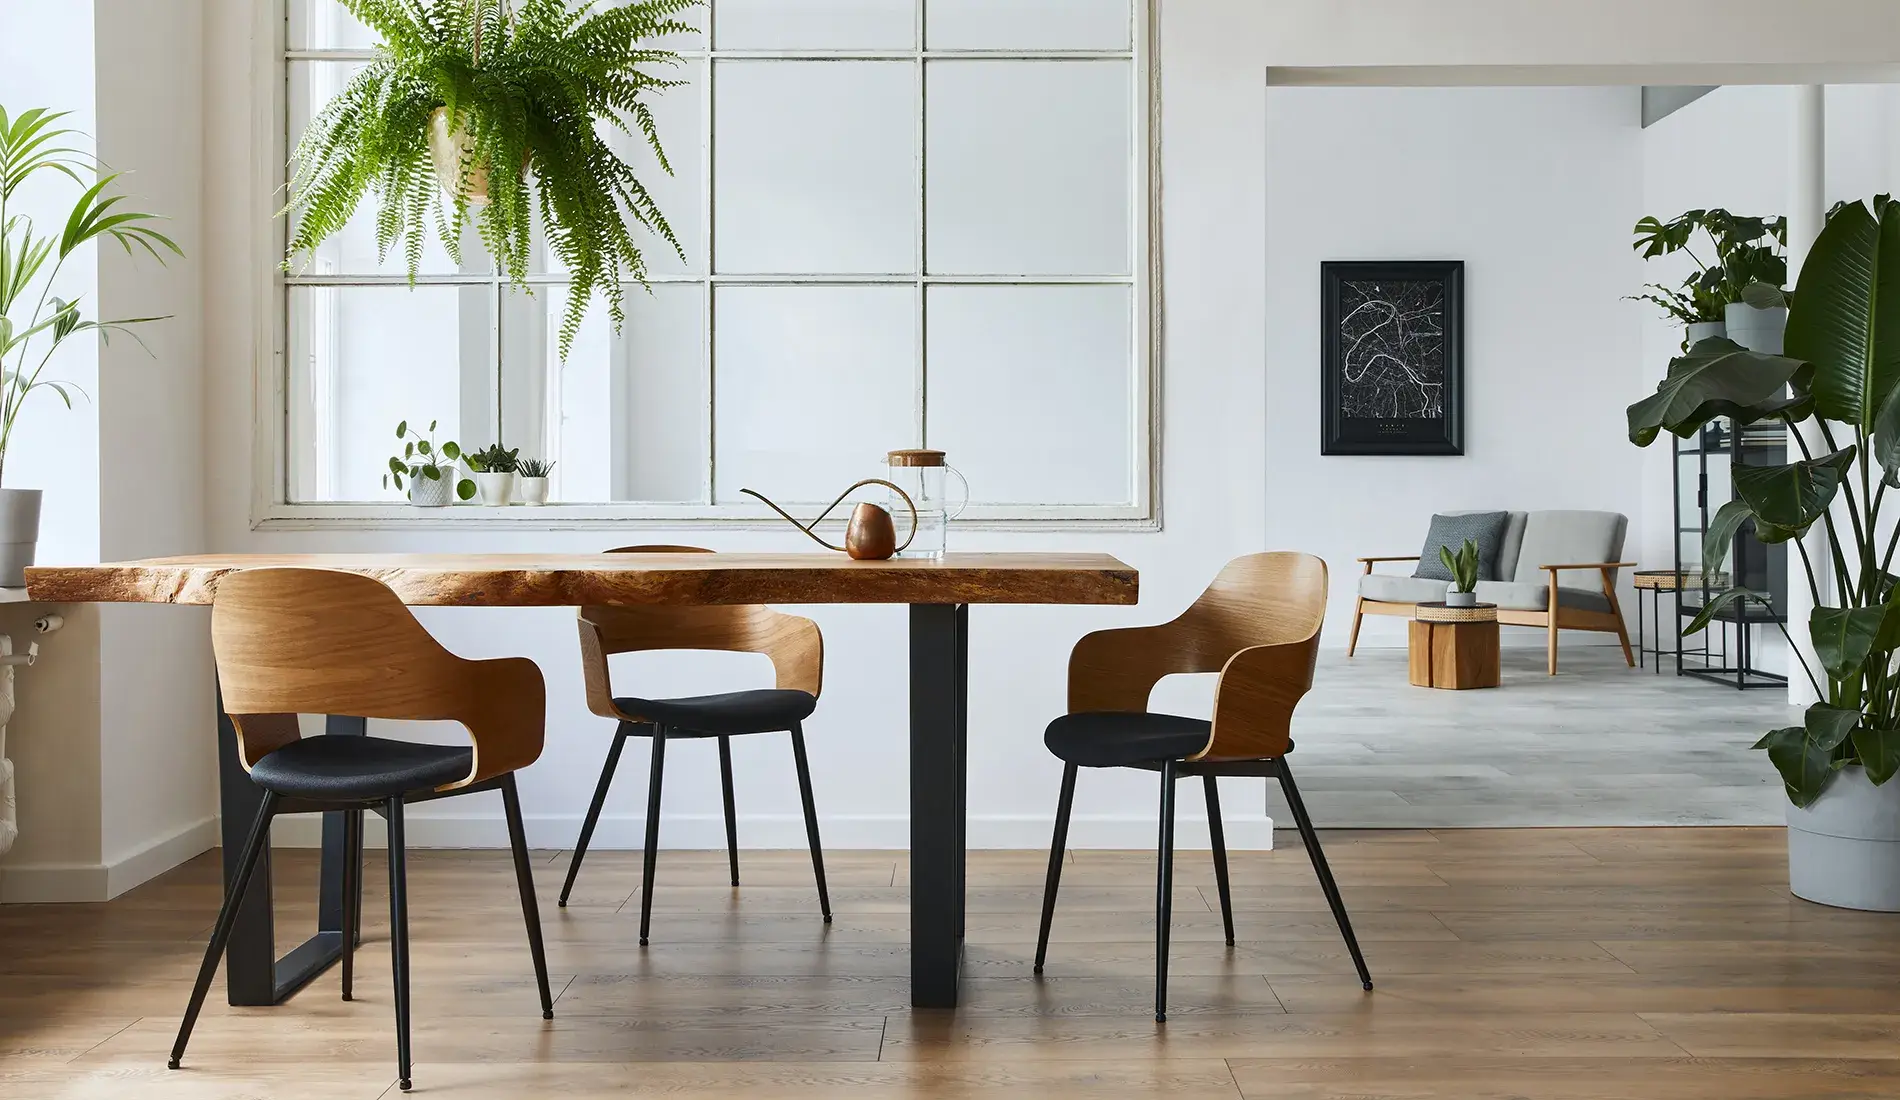 Esstisch aus Eiche mit Baumkante in modernem Ambiente in Wohnzimmer mit Massivholzdeko